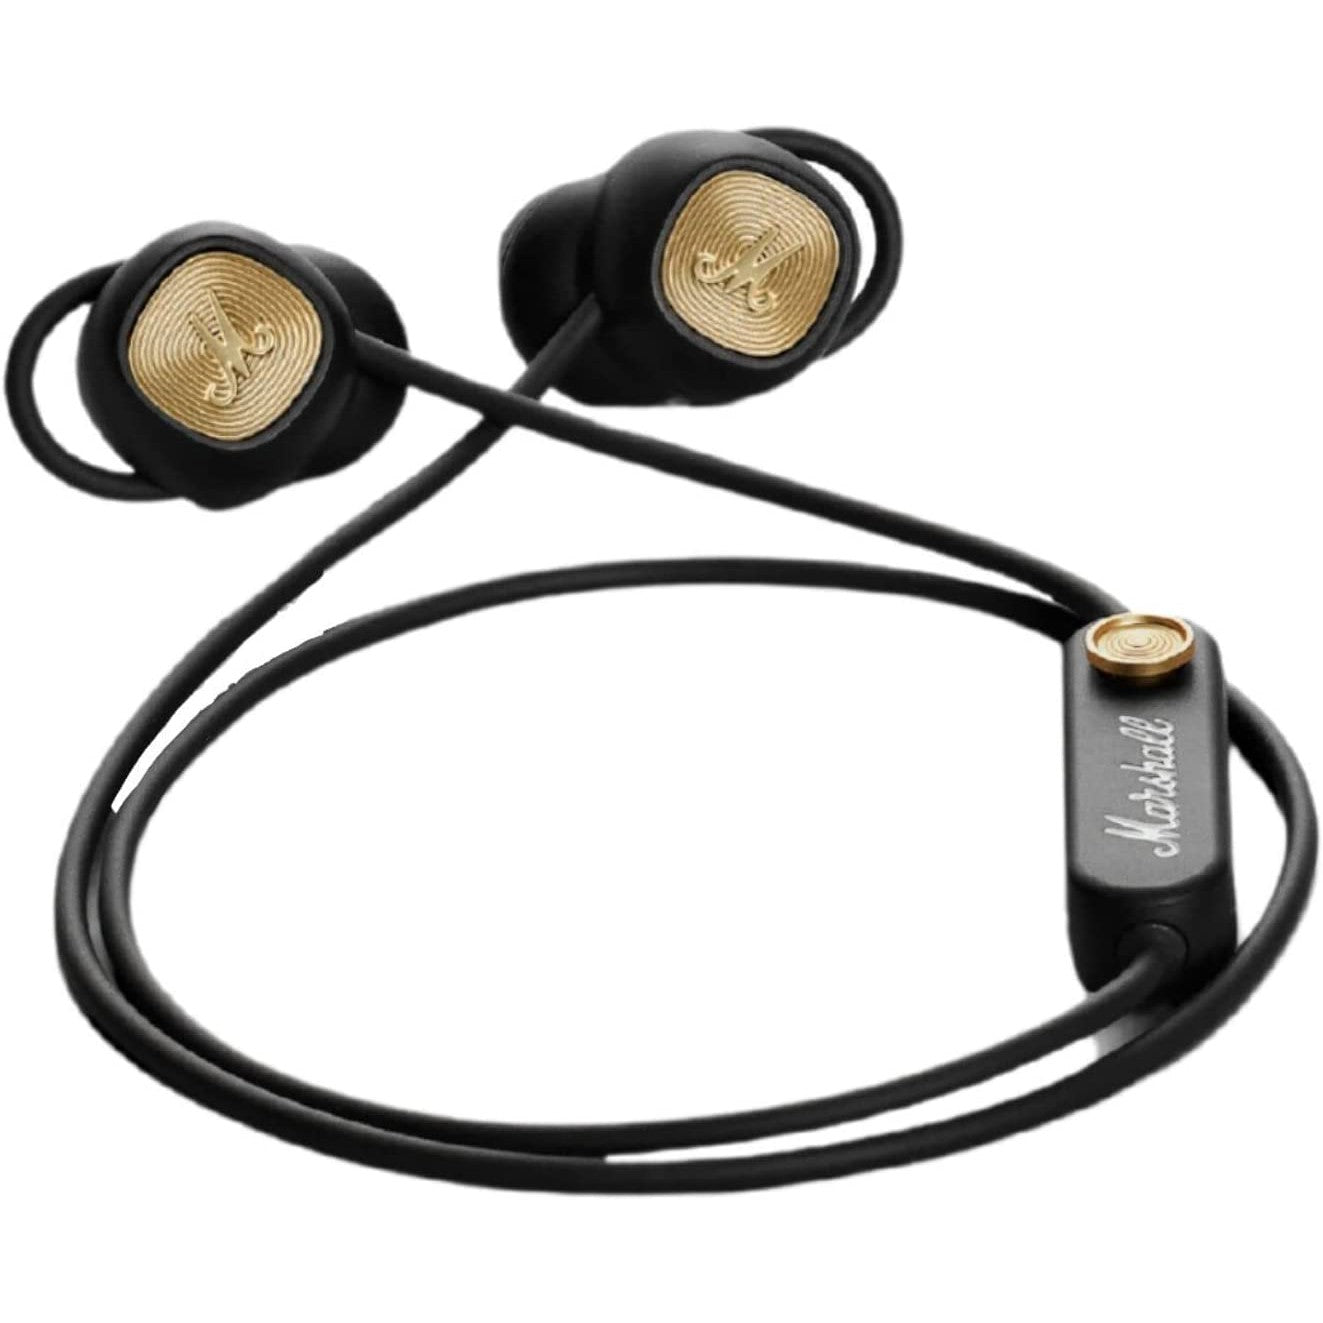 Marshall Minor II Wireless In-Ear Headphones - Refurbished Excellent